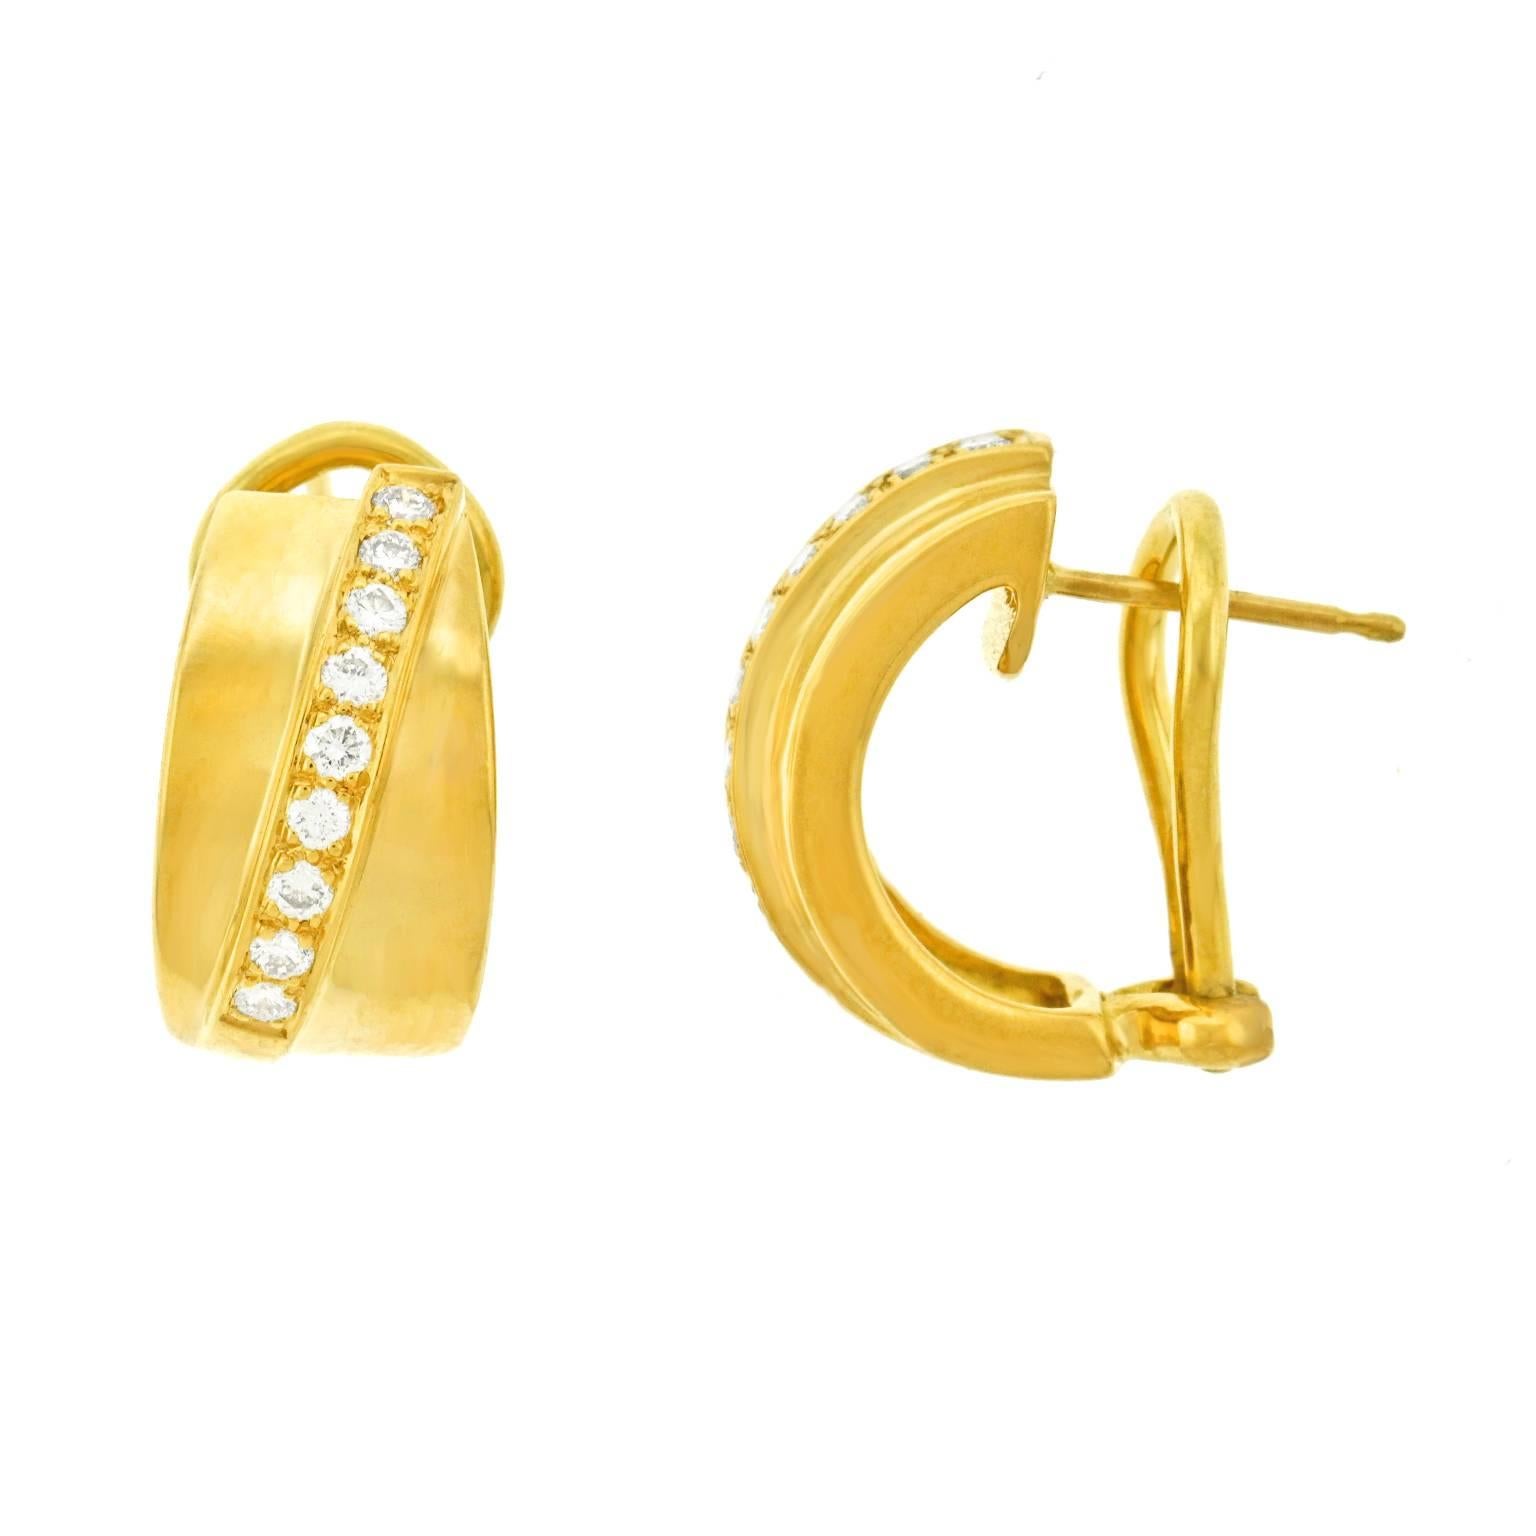 Tannler Diamond and Gold Earrings 4